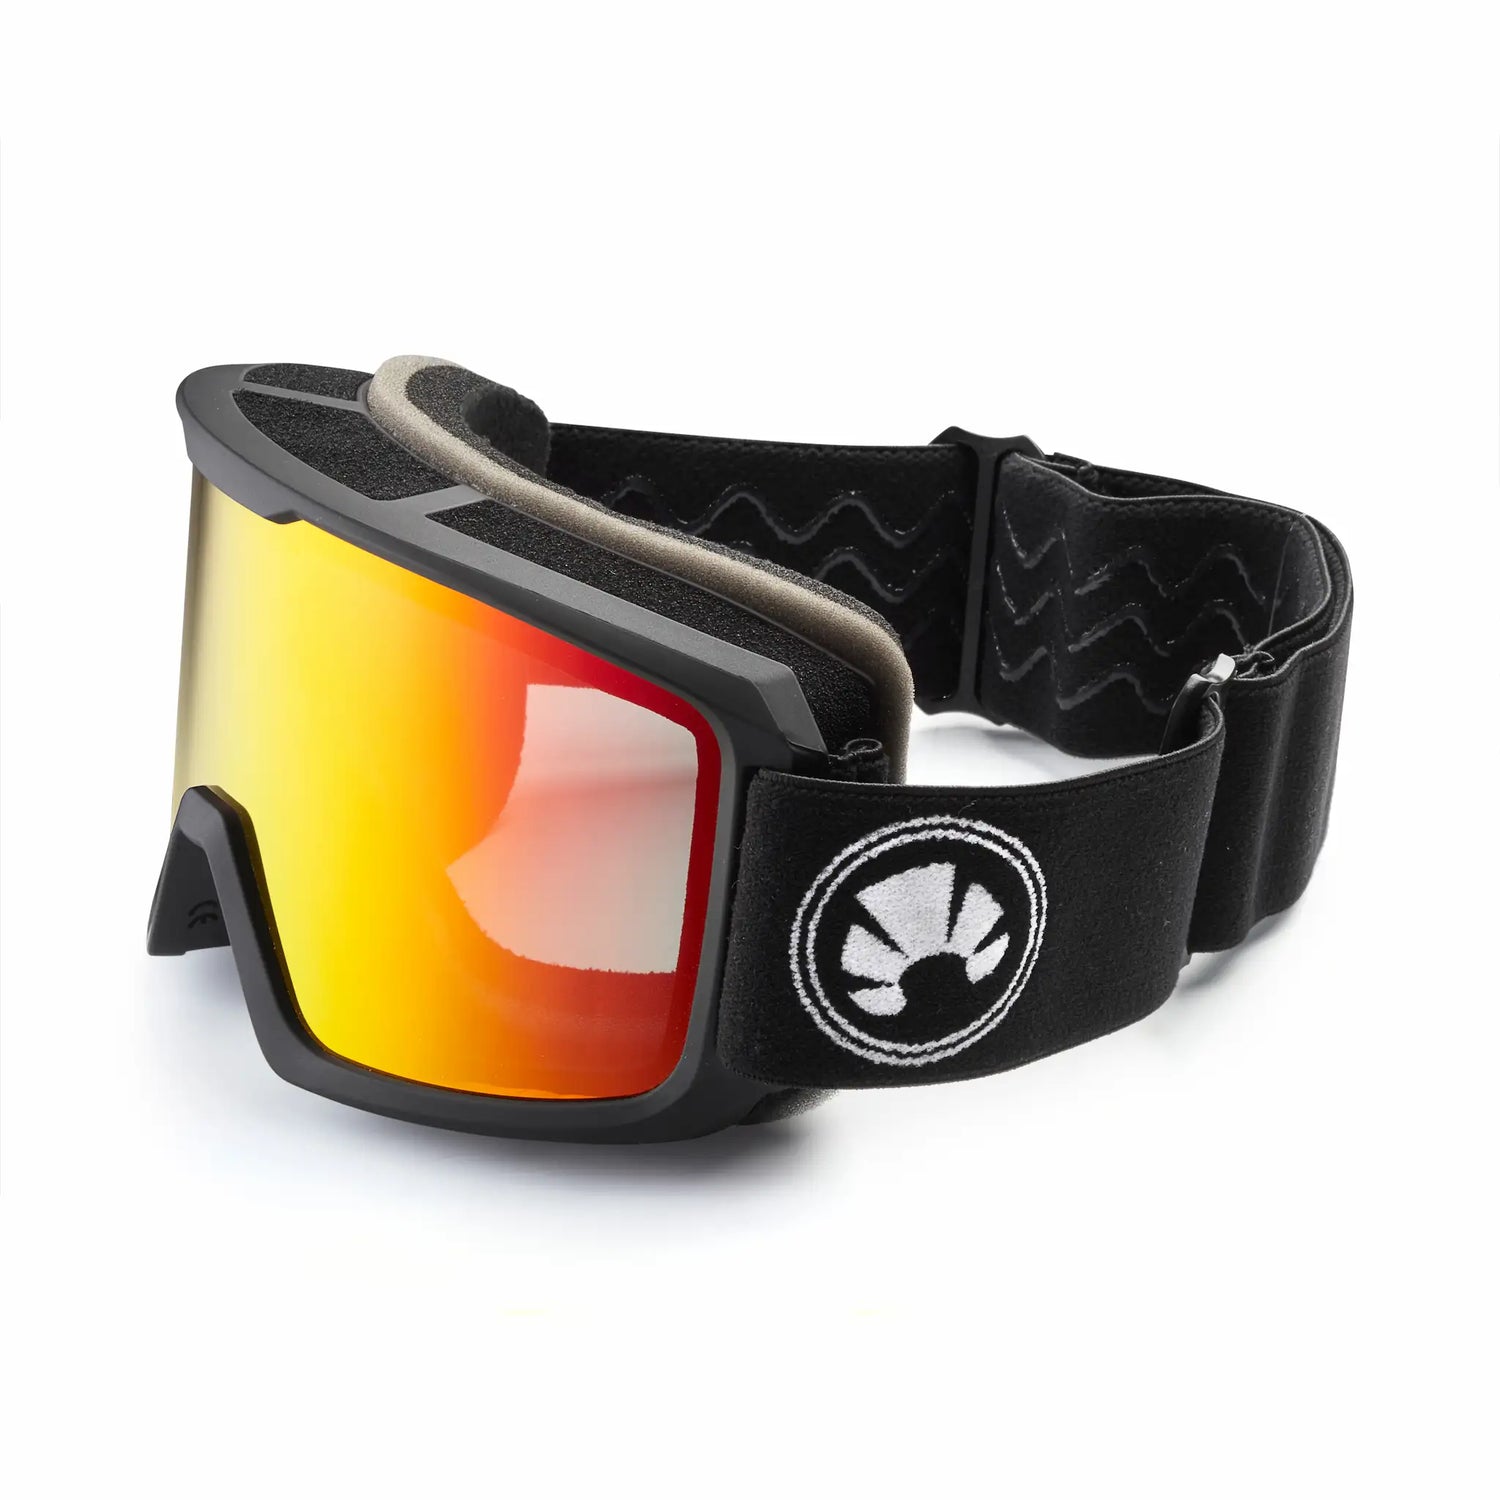 bakedsnow framed ski goggles with red lenses